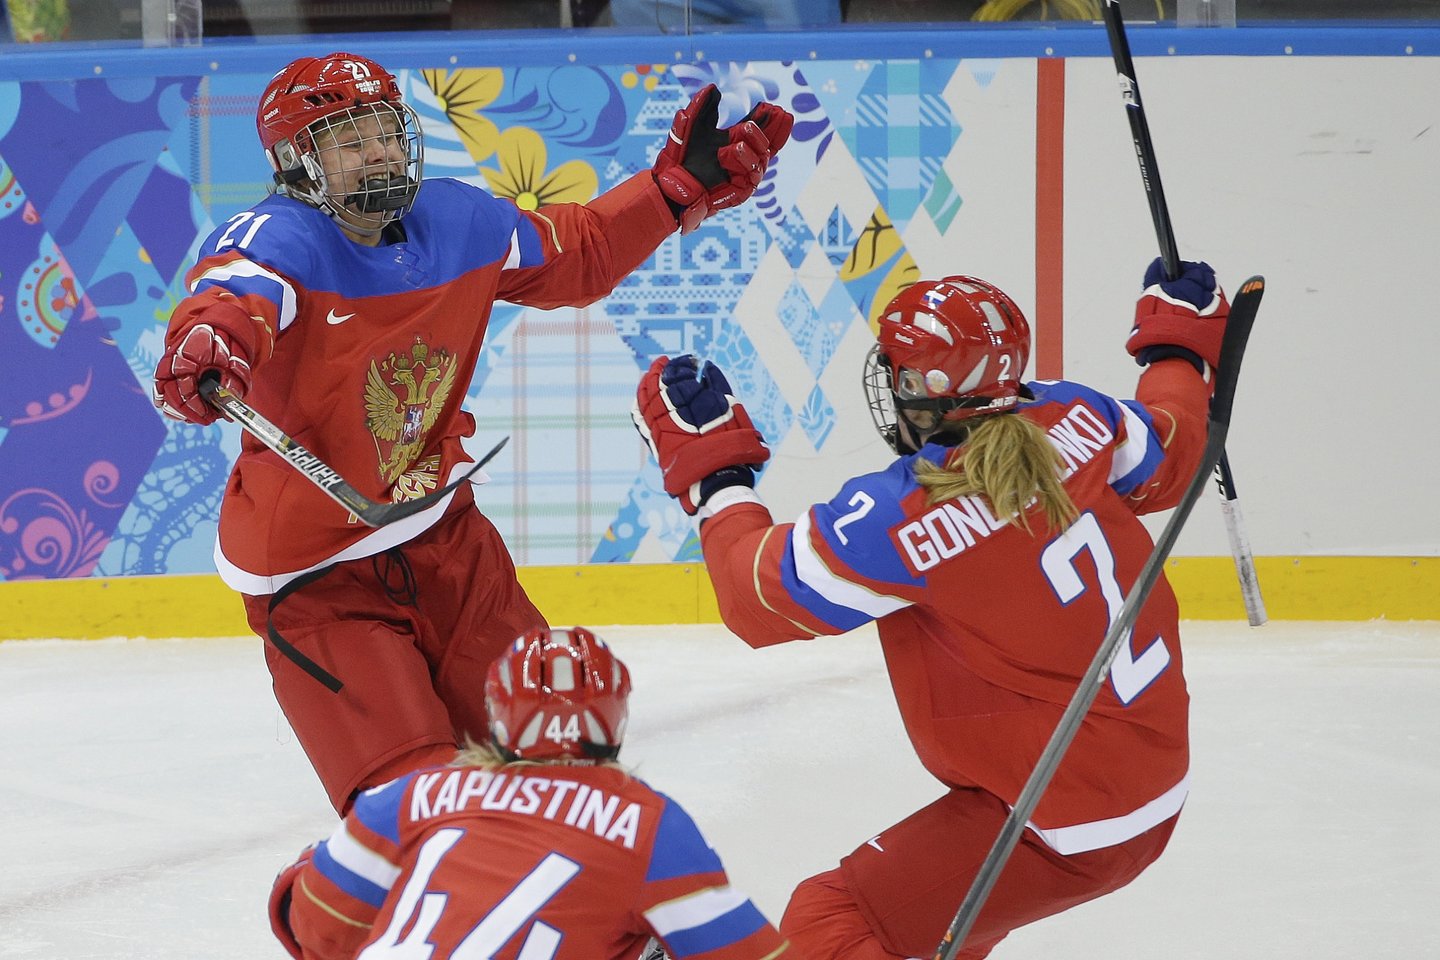  Ketvirtadienį diskvalifikuota visa 2014 metų Rusijos moterų ledo ritulio rinktinė<br> AFP/Scanpix.com nuotr.